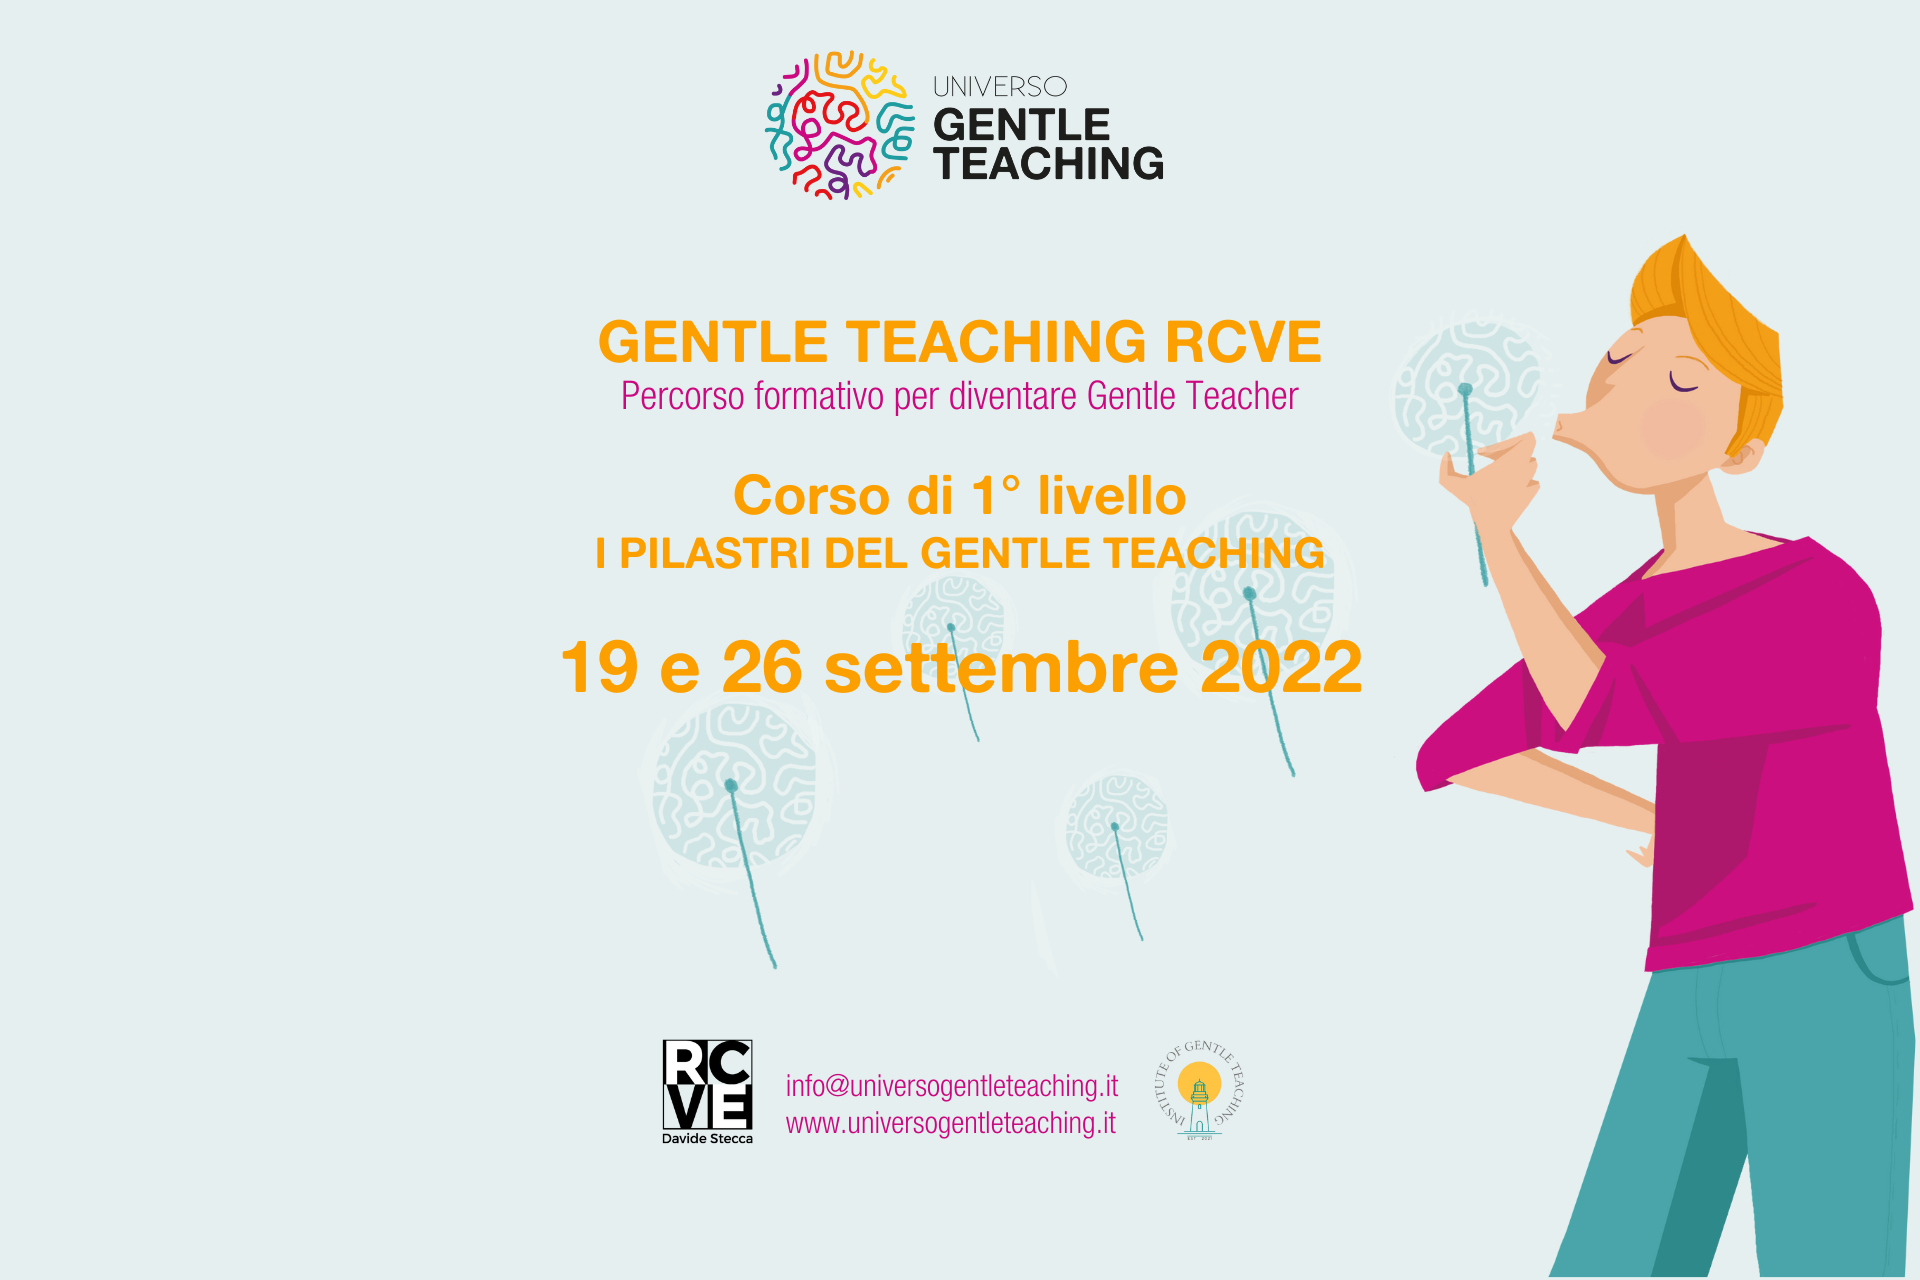 Corso formazione Gentle Teaching primo livello - Universo Gentle Teaching